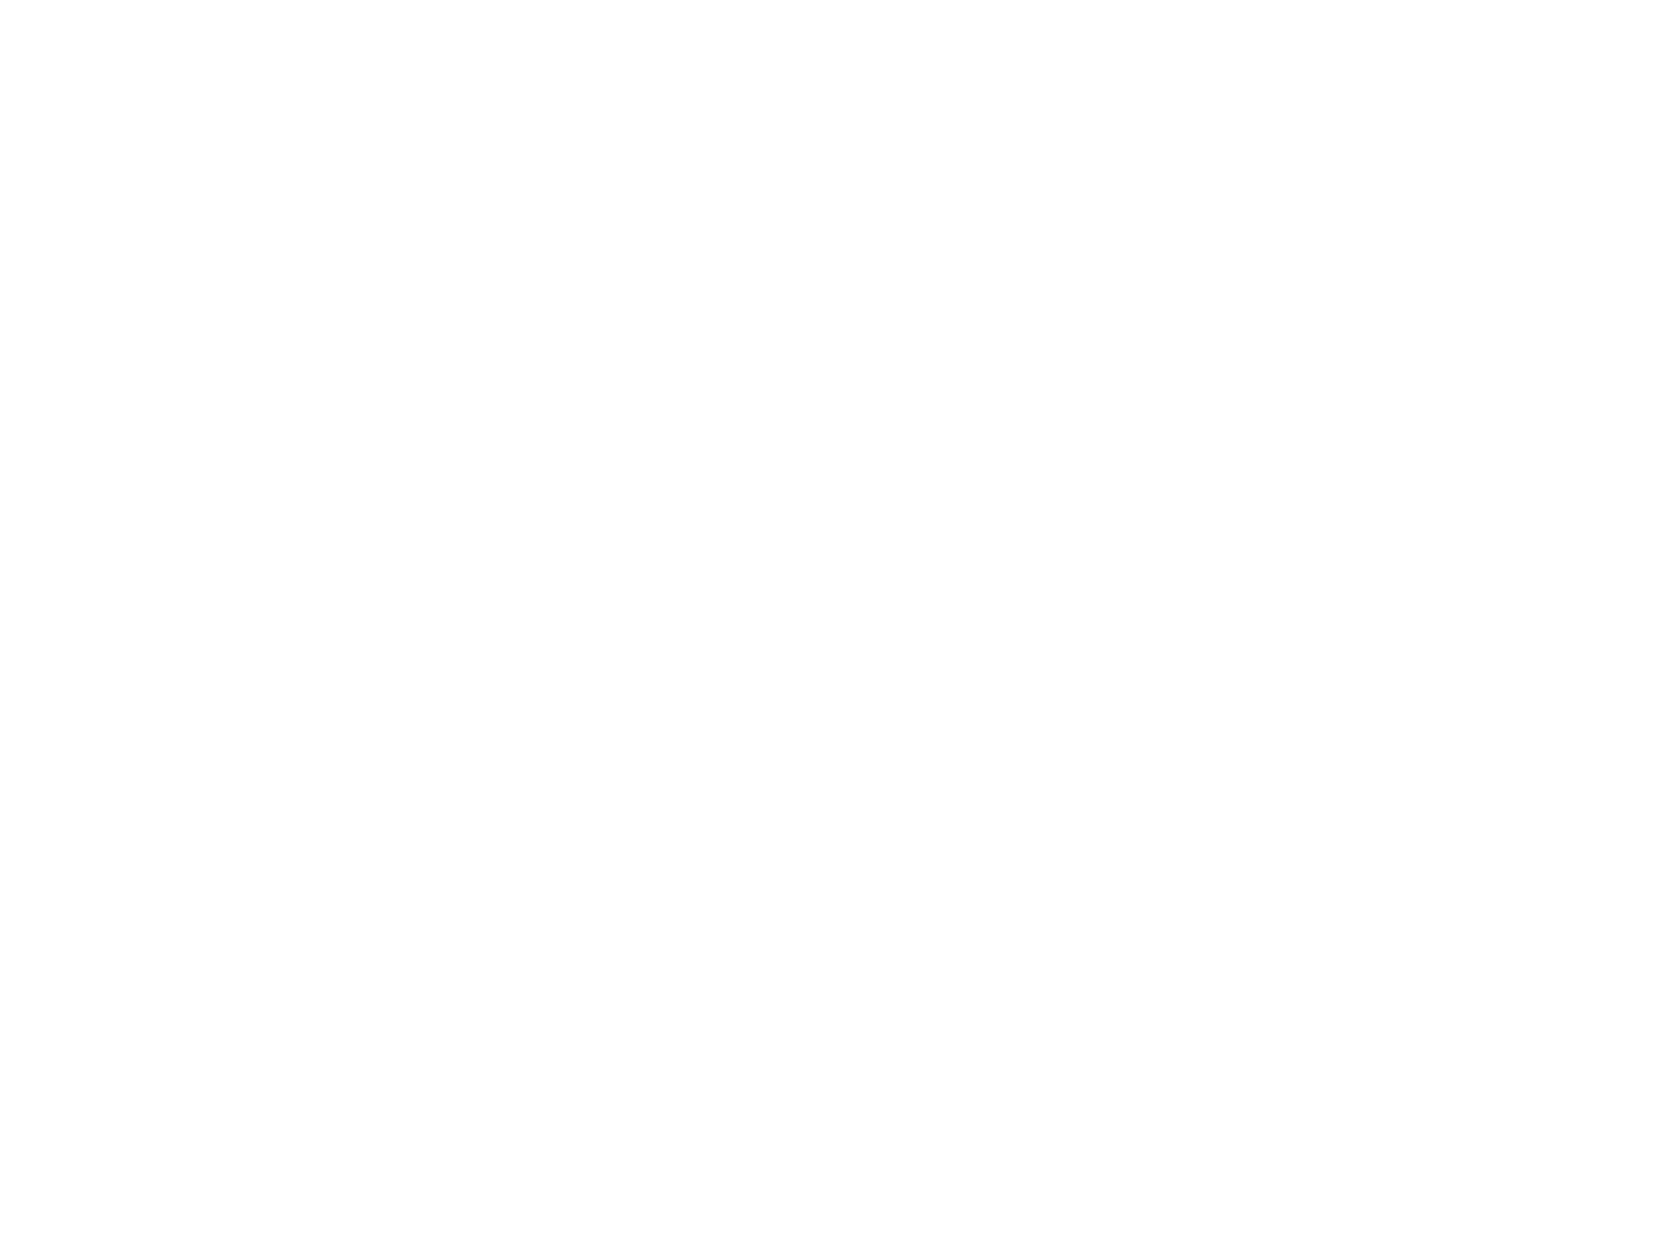 Евгений Короленко. Орочская бабушка Прасковья (фрагмент). 1954. Музей изобразительных искусств г. Комсомольска-на-Амуре, Комсомольск-на-Амуре